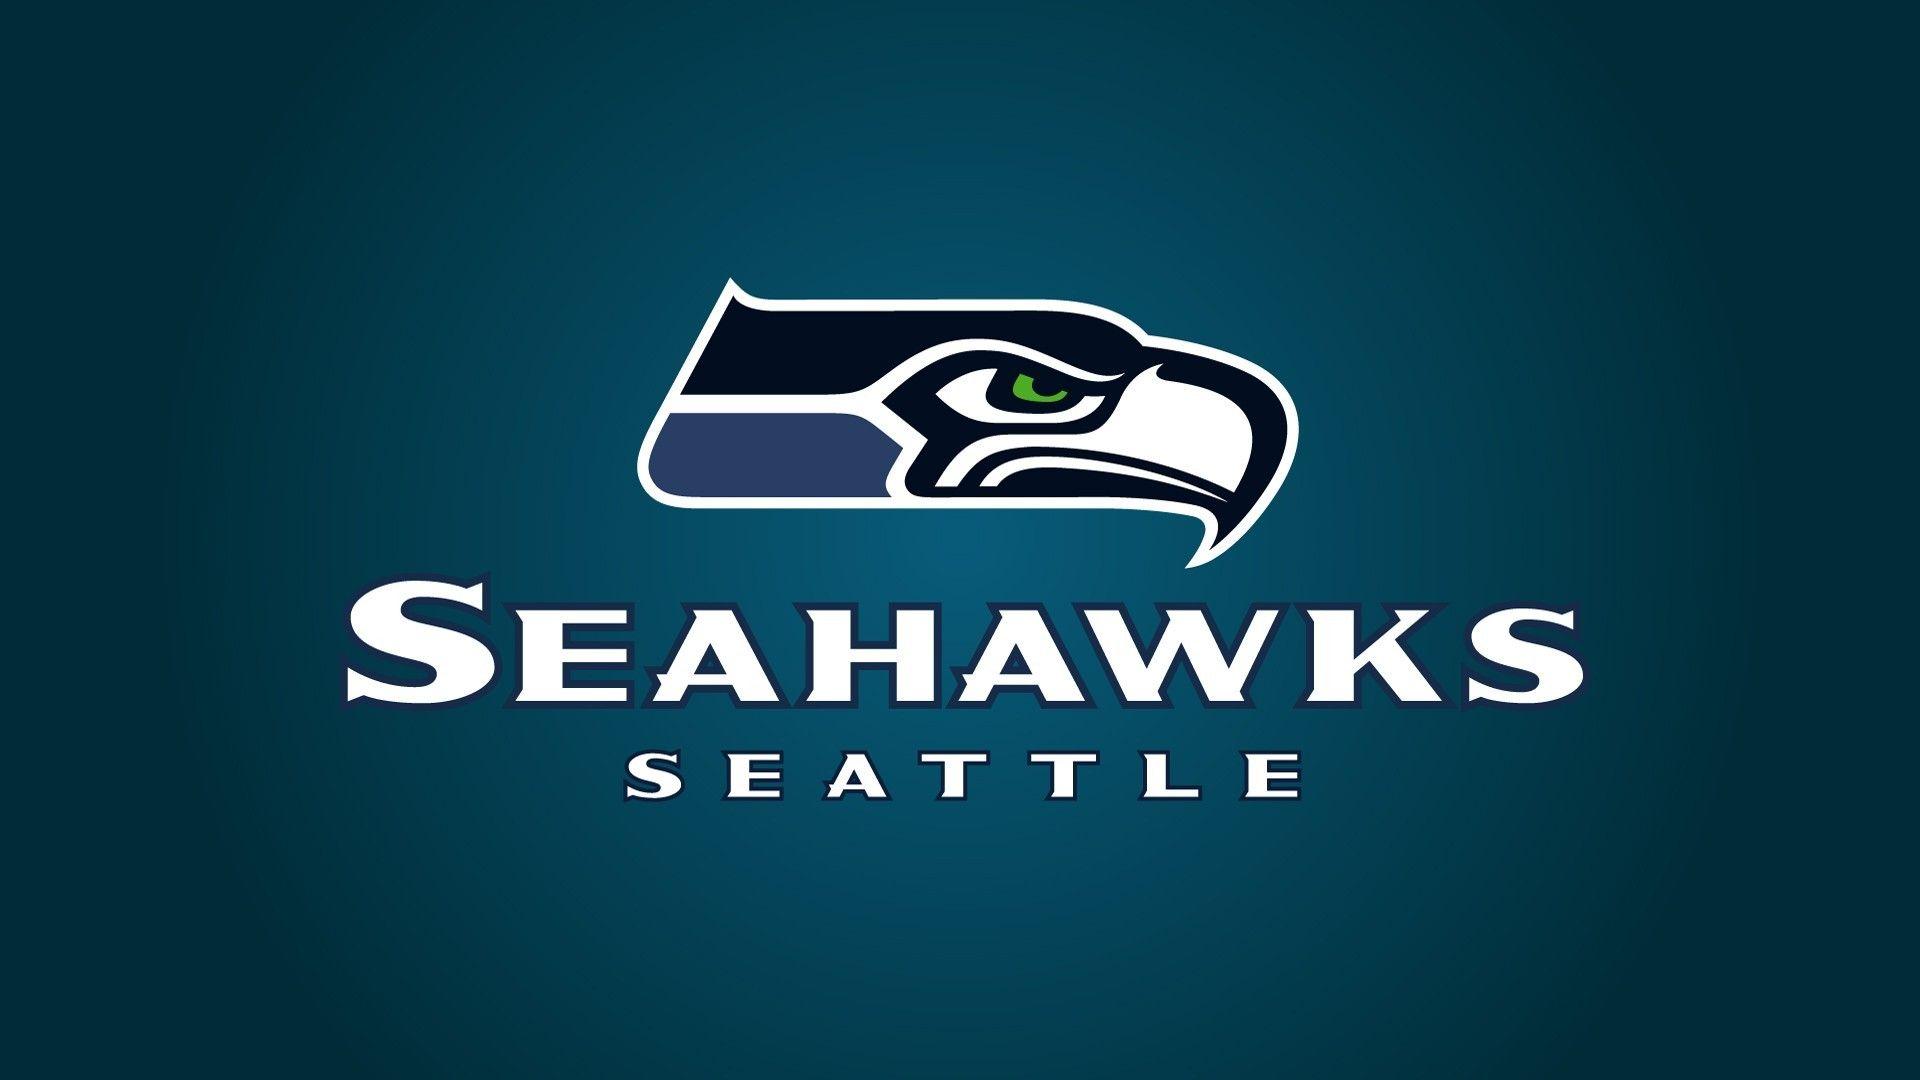 Seattle seahawks logo wallpaper. PC